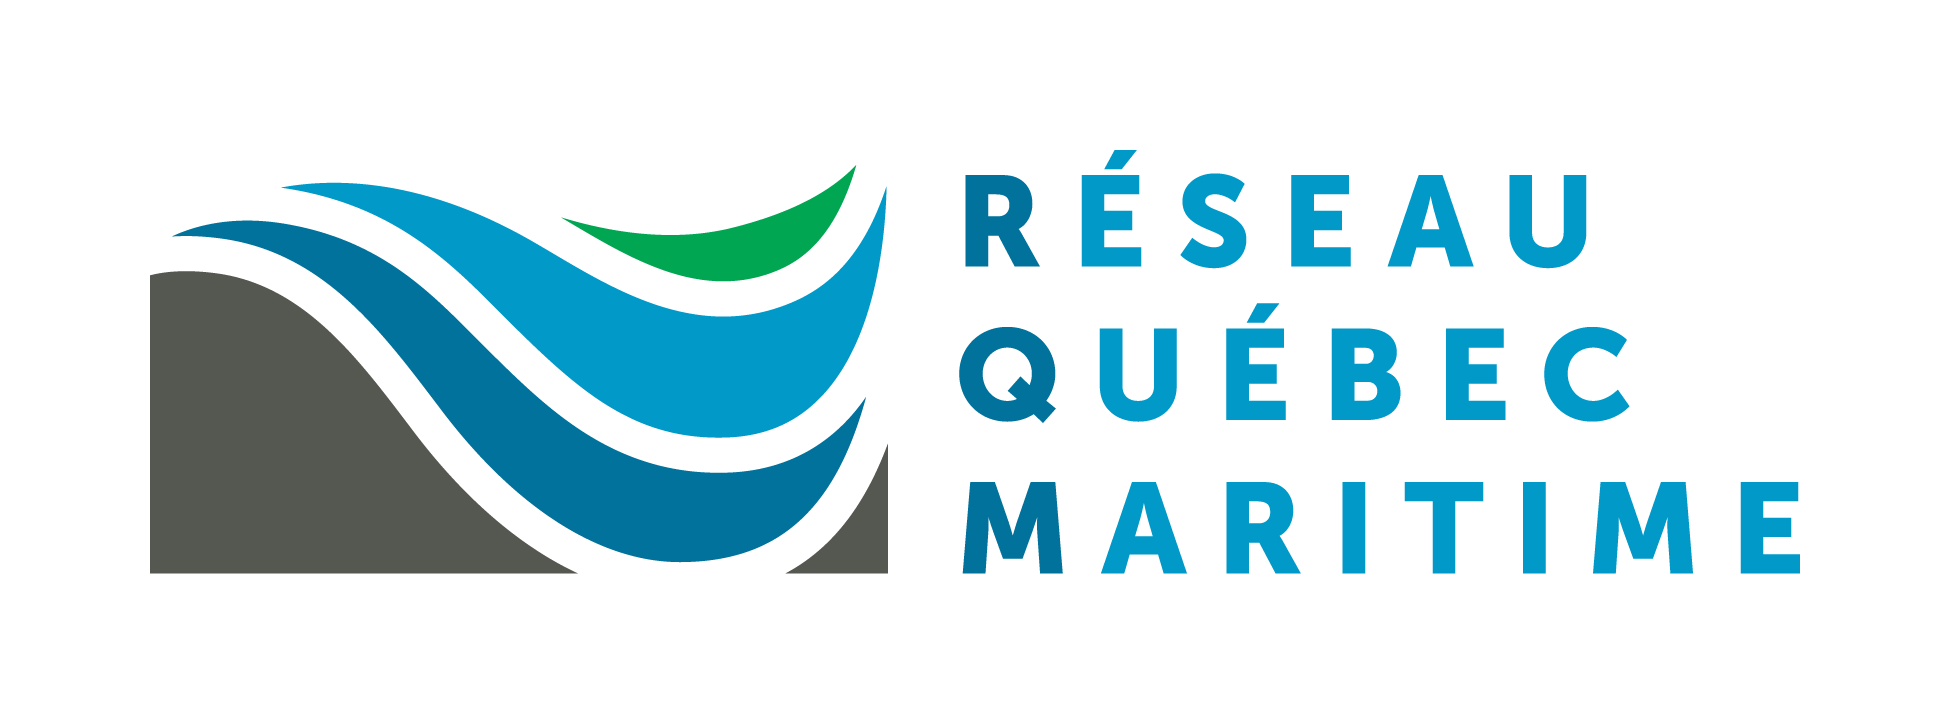 Réseau Québec maritime - RQM